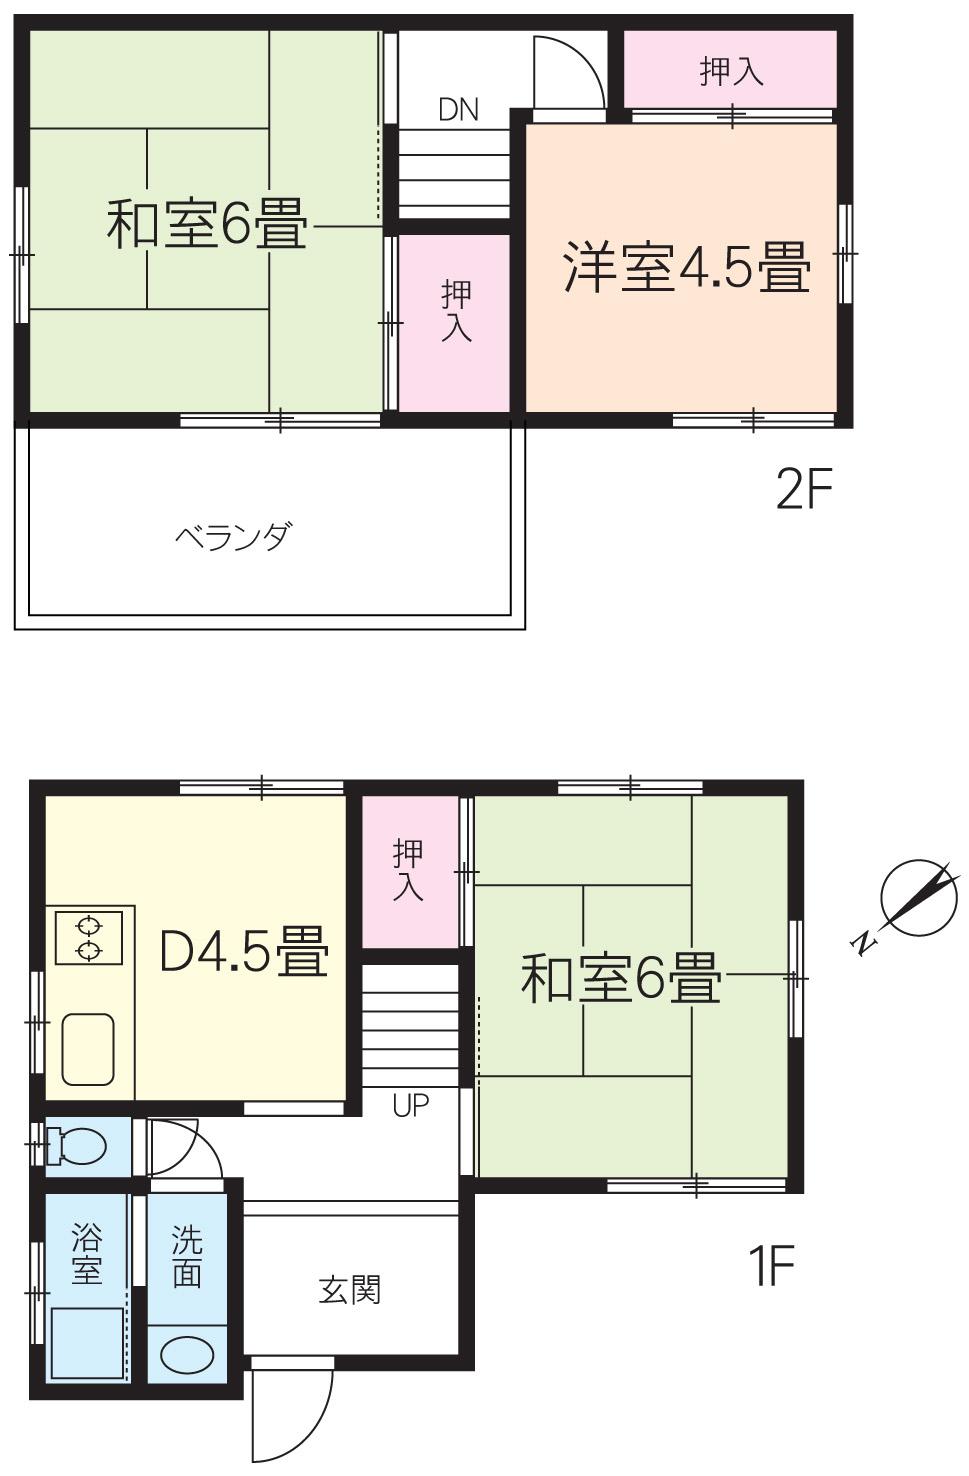 Floor plan. 6.3 million yen, 3K, Land area 61.39 sq m , Building area 51.83 sq m